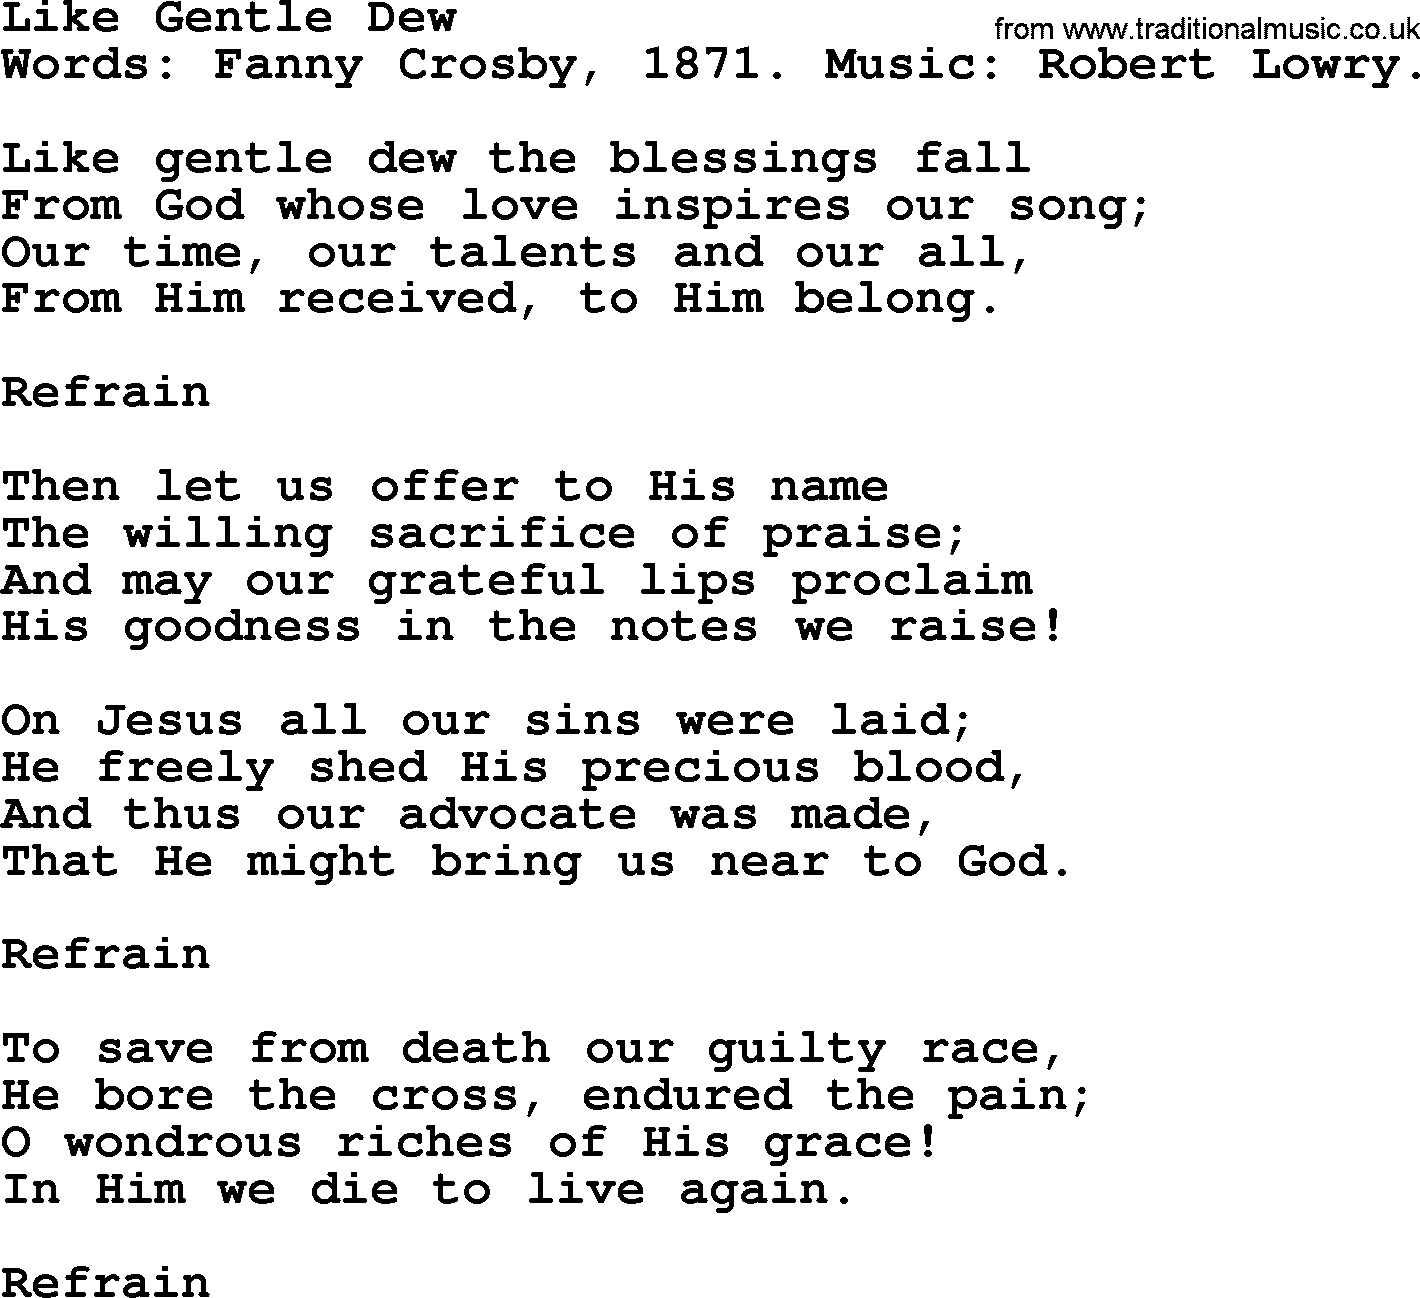 Fanny Crosby song: Like Gentle Dew, lyrics